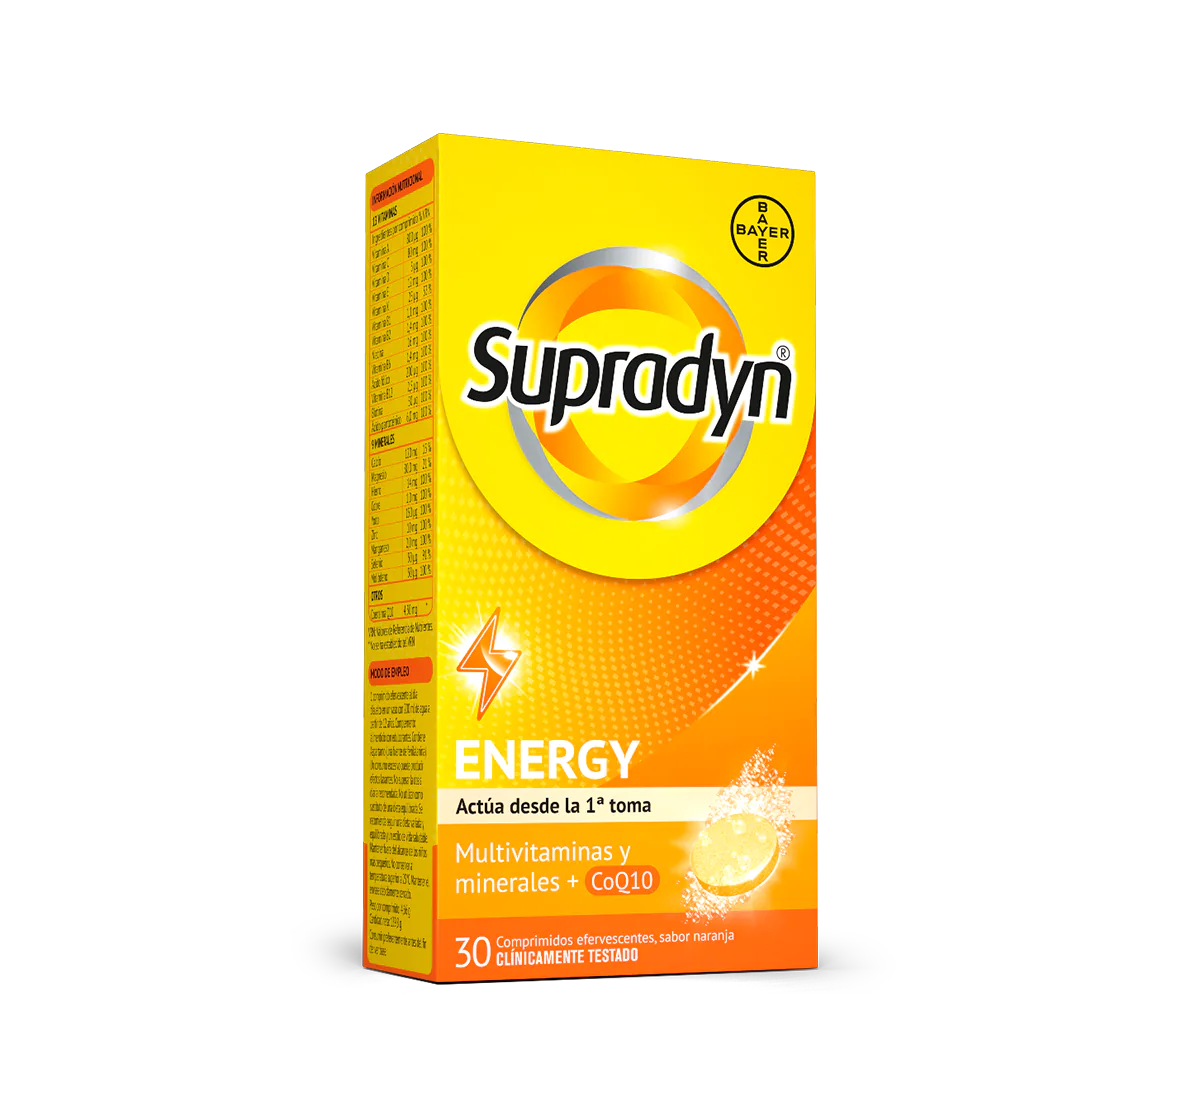 Supradyn® Energy Efervescente es un multivitamínico con minerales que complementando tu dieta habitual, ayuda a activar y mantener tu energía y vitalidad durante todo el día. Contiene Coenzima Q10